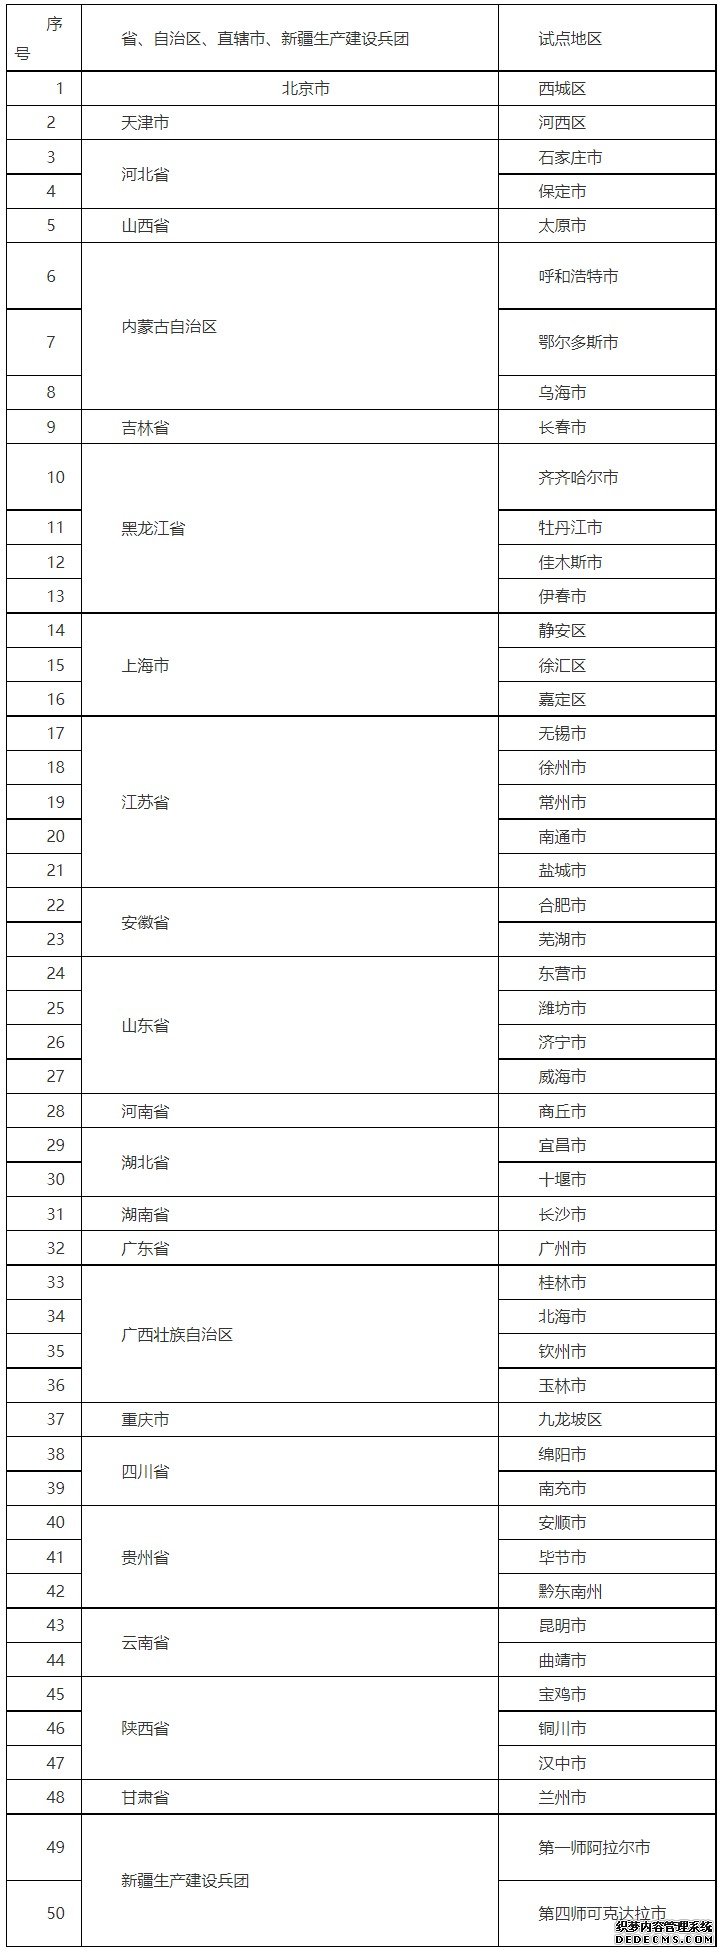 全国第二批城市一刻钟便民生活圈试点地区公布北京市西城区等50个地区上榜